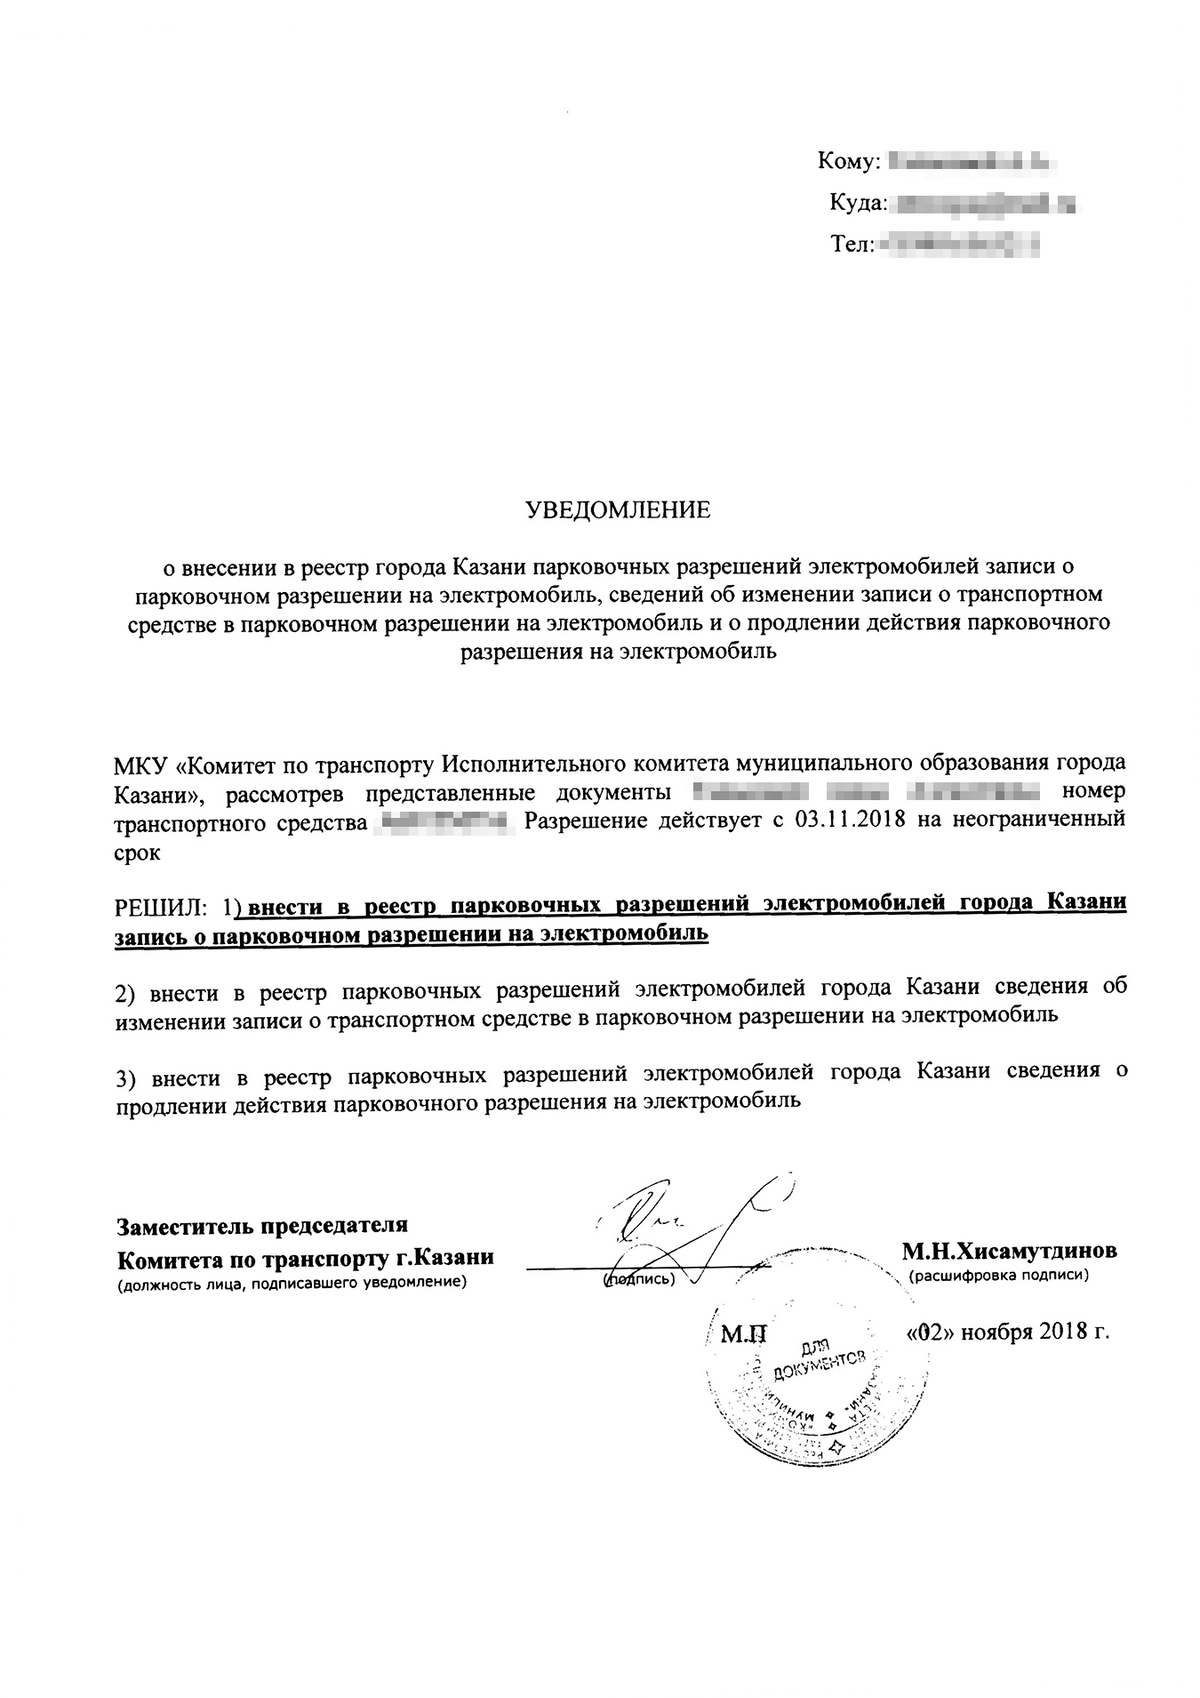 Уведомление о внесении в реестр парковочных разрешений города Казани